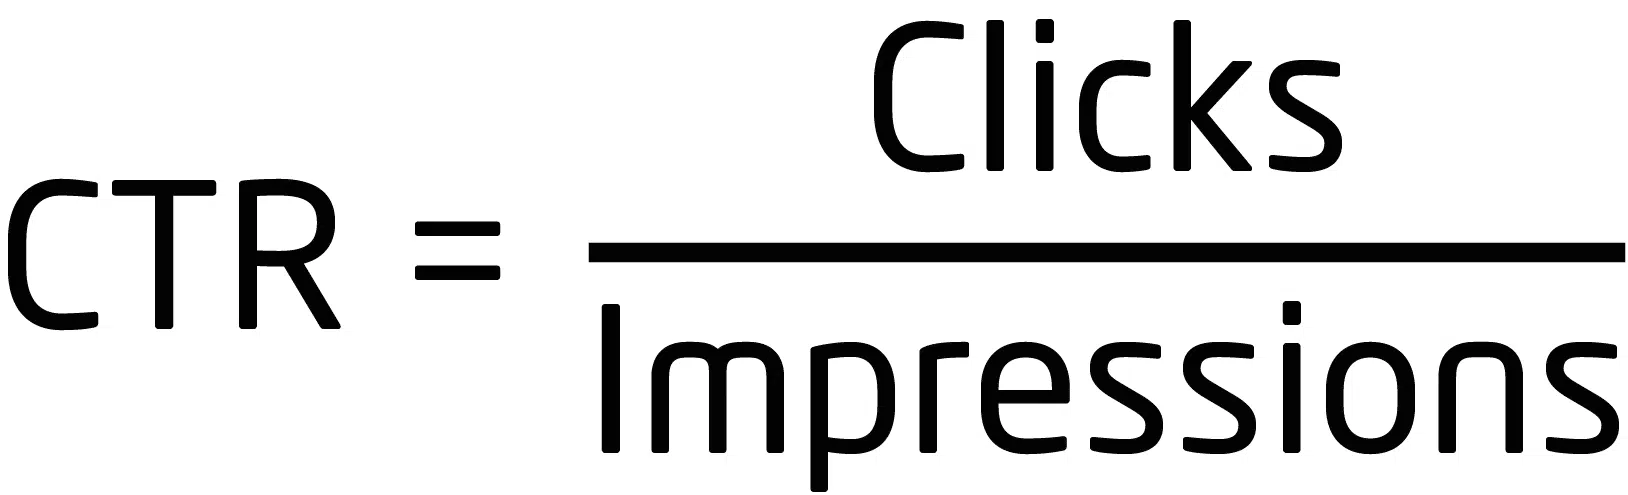 click over impressions equals ctr